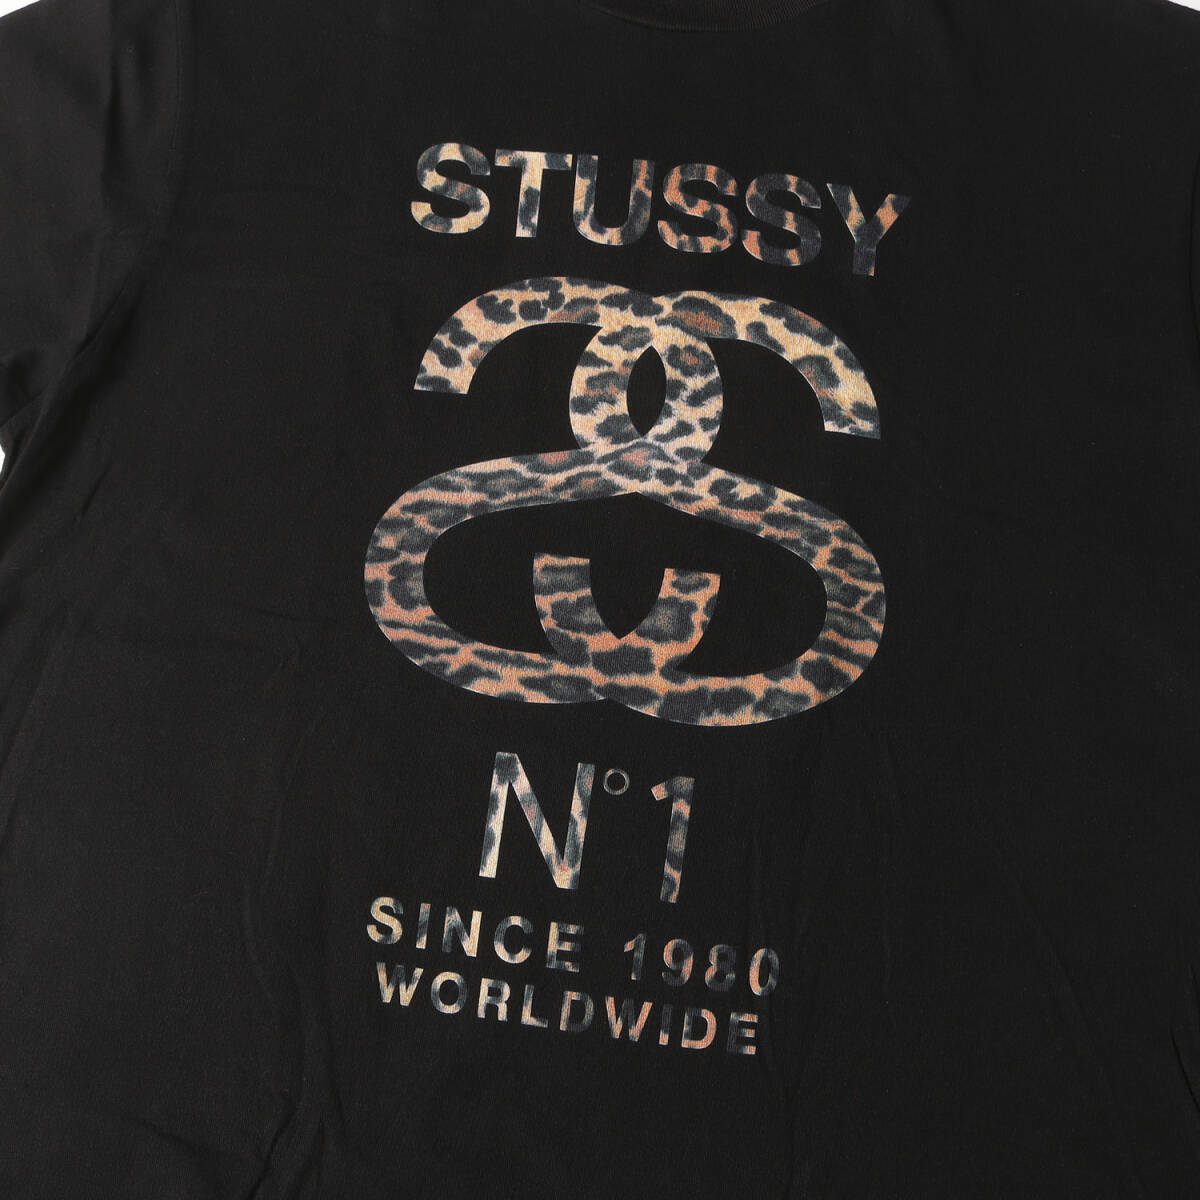  товар в хорошем состоянии  STUSSY ...  футболка   размер  :XL ... No.1 лого   ... гриф   футболка с коротким руковом   черный   вершина ... ...  улица 